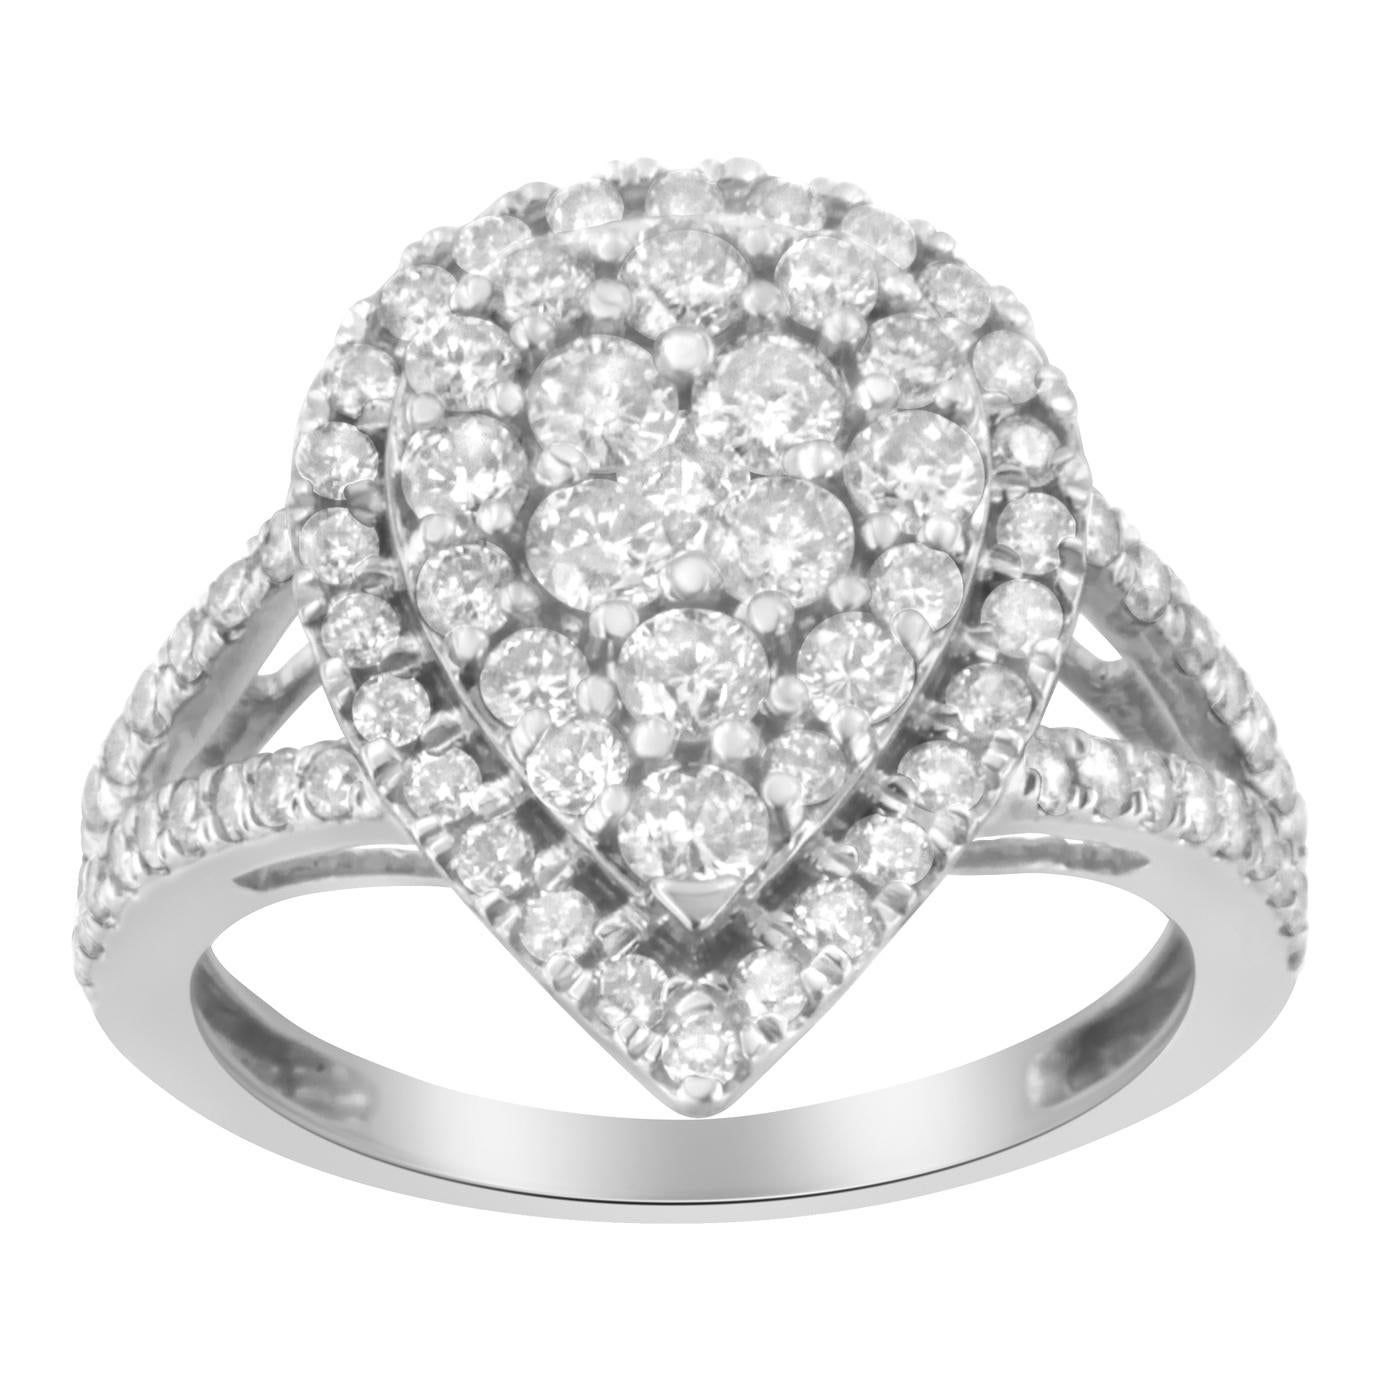 Ein kühner Silber- und Diamant-Cluster-Ring. Dieser birnenförmige Ring besteht aus 80 natürlichen Diamanten im Rundschliff in einer Zackenfassung mit einem Gesamtgewicht von 1 1/2 Karat. Die Diamanten sind in wunderschönem Sterlingsilber